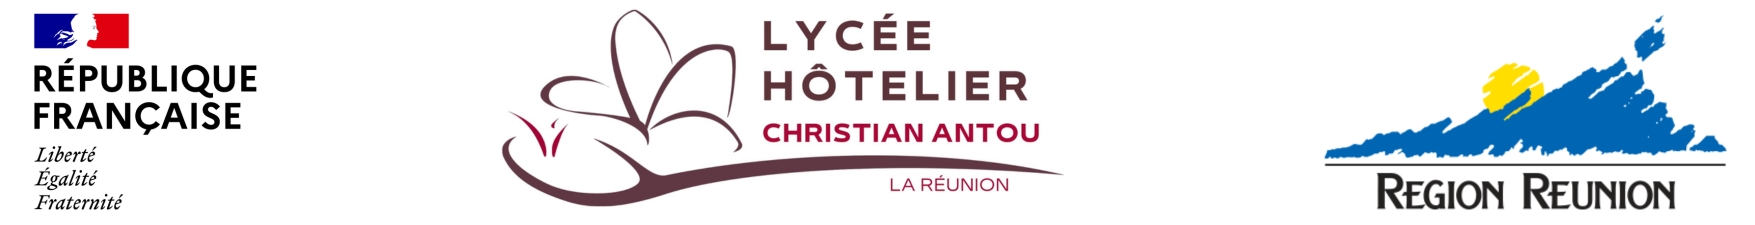 Lycée hôtelier "Christian Antou"